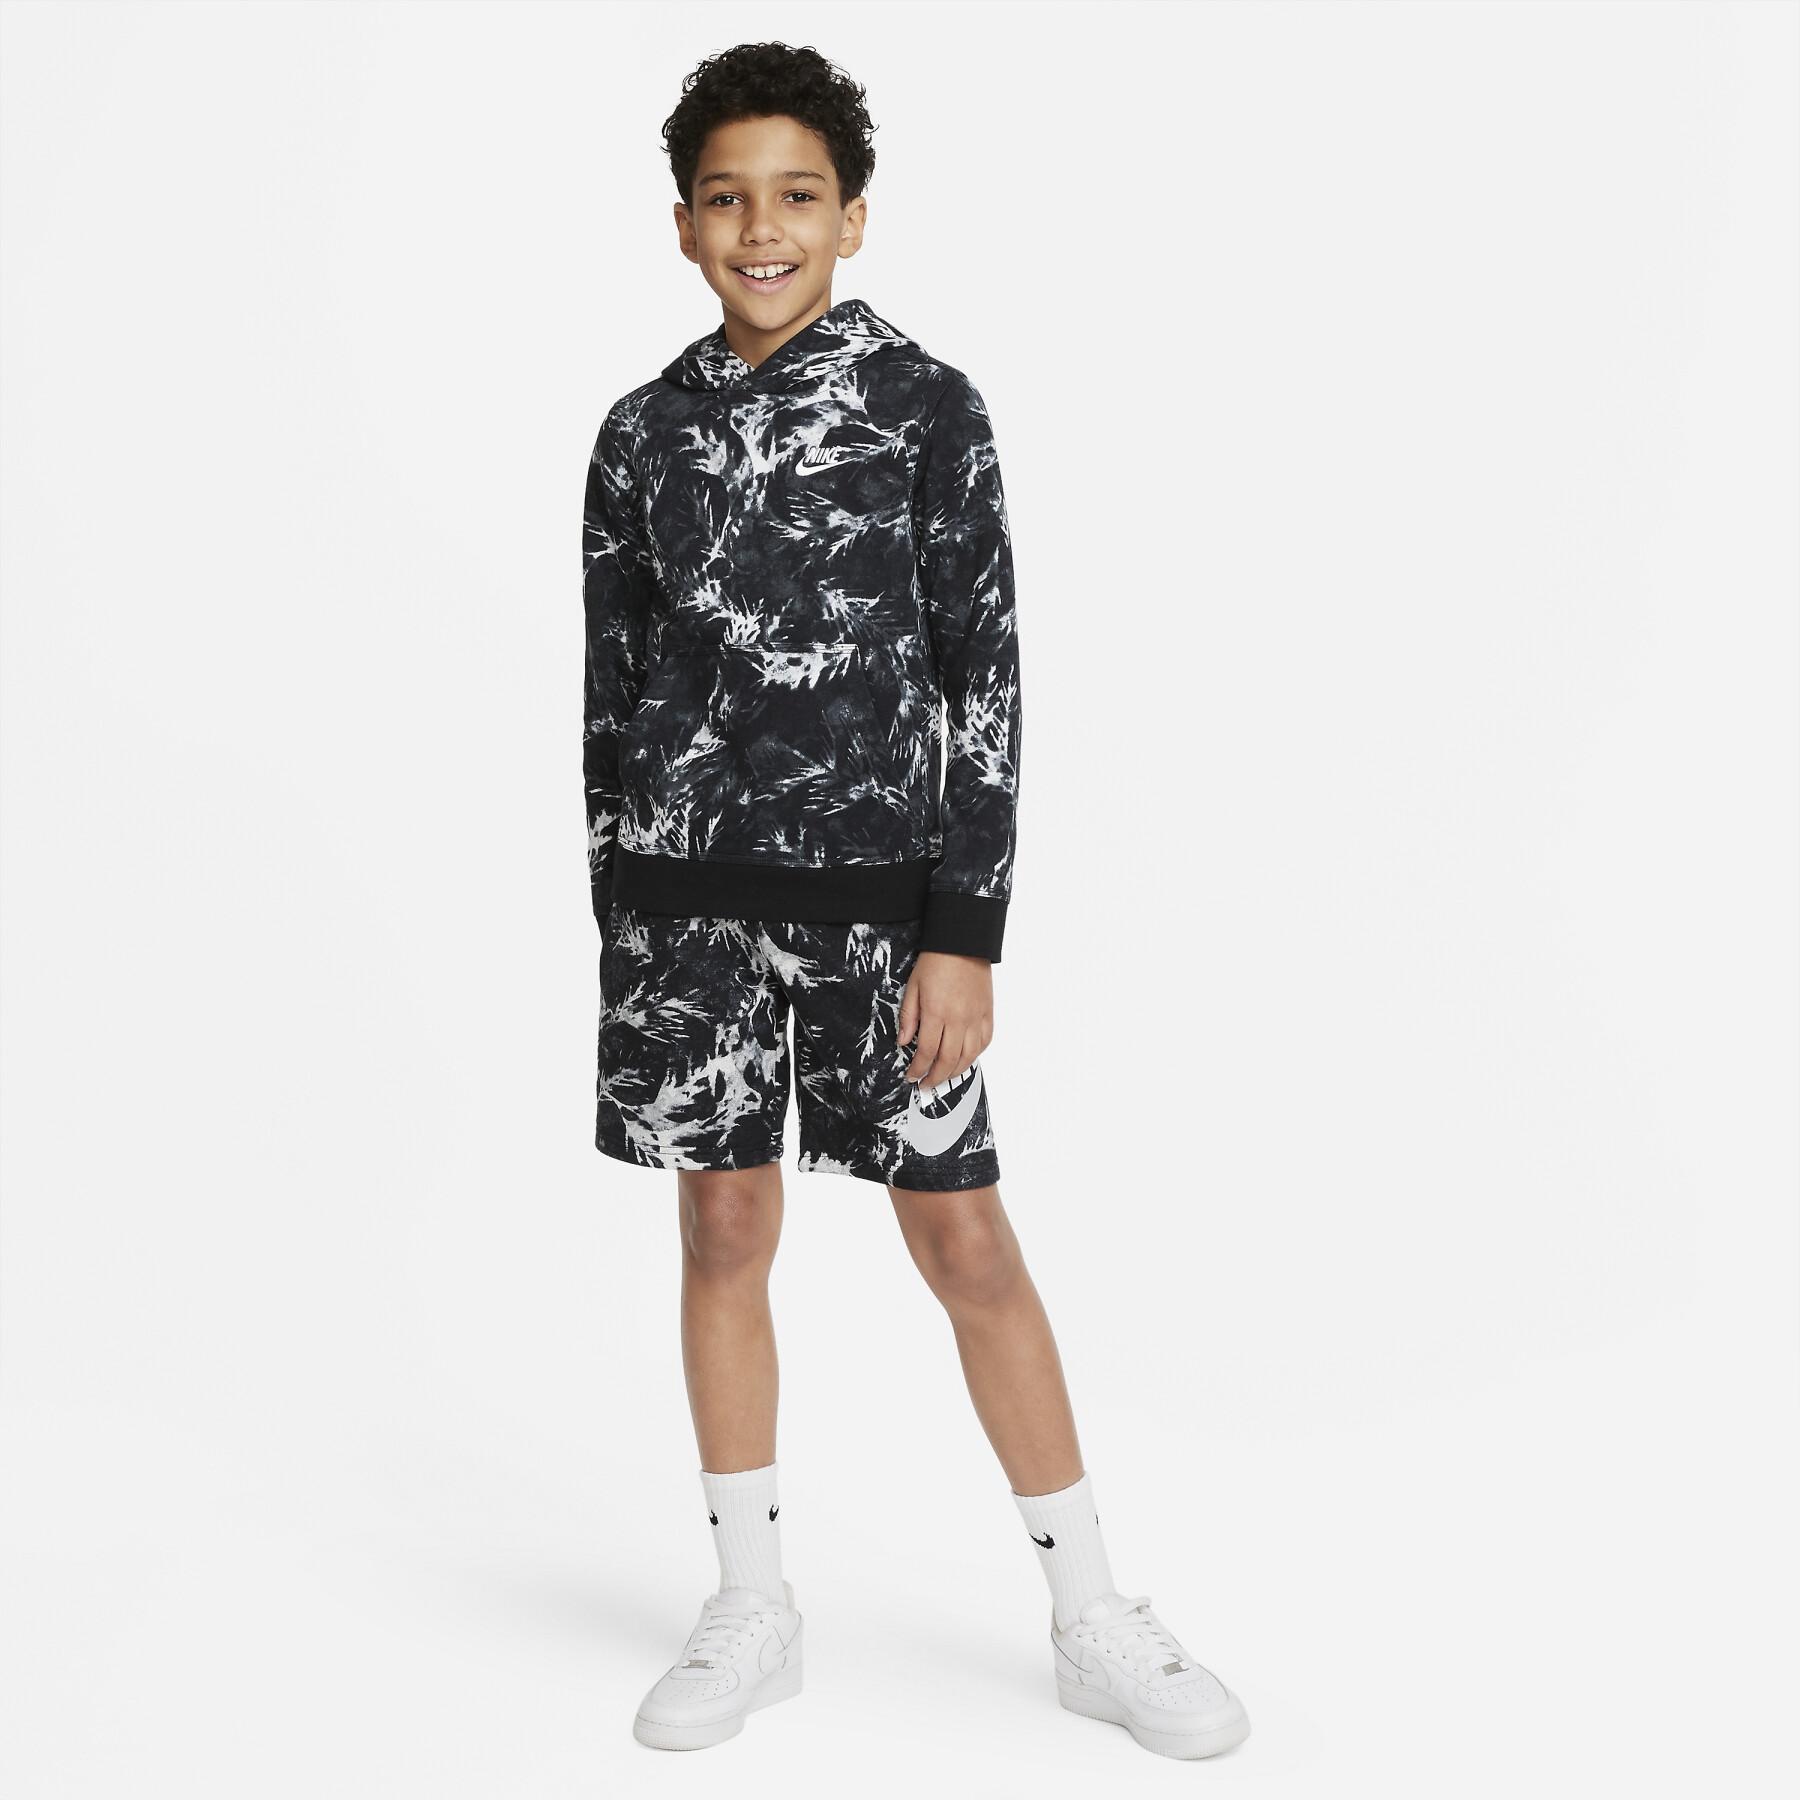 Sweatshirt child Nike Aop